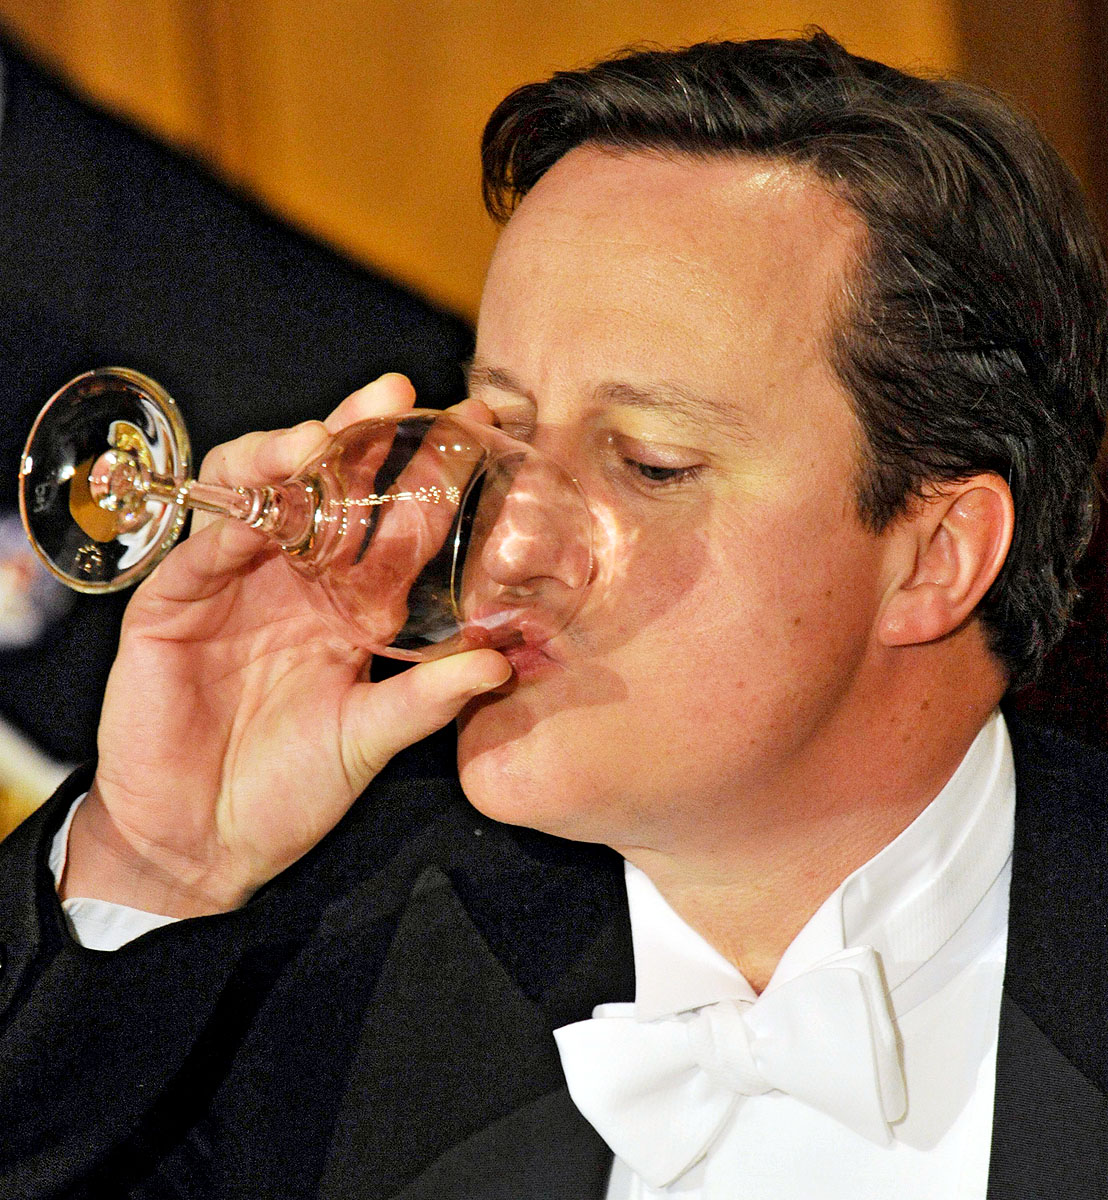 David Cameron brit miniszterelnök a londoni lordmajor tavaly novemberi bankettjén. Vége lehet a pártérdeket szolgáló vacsorázgatásnak